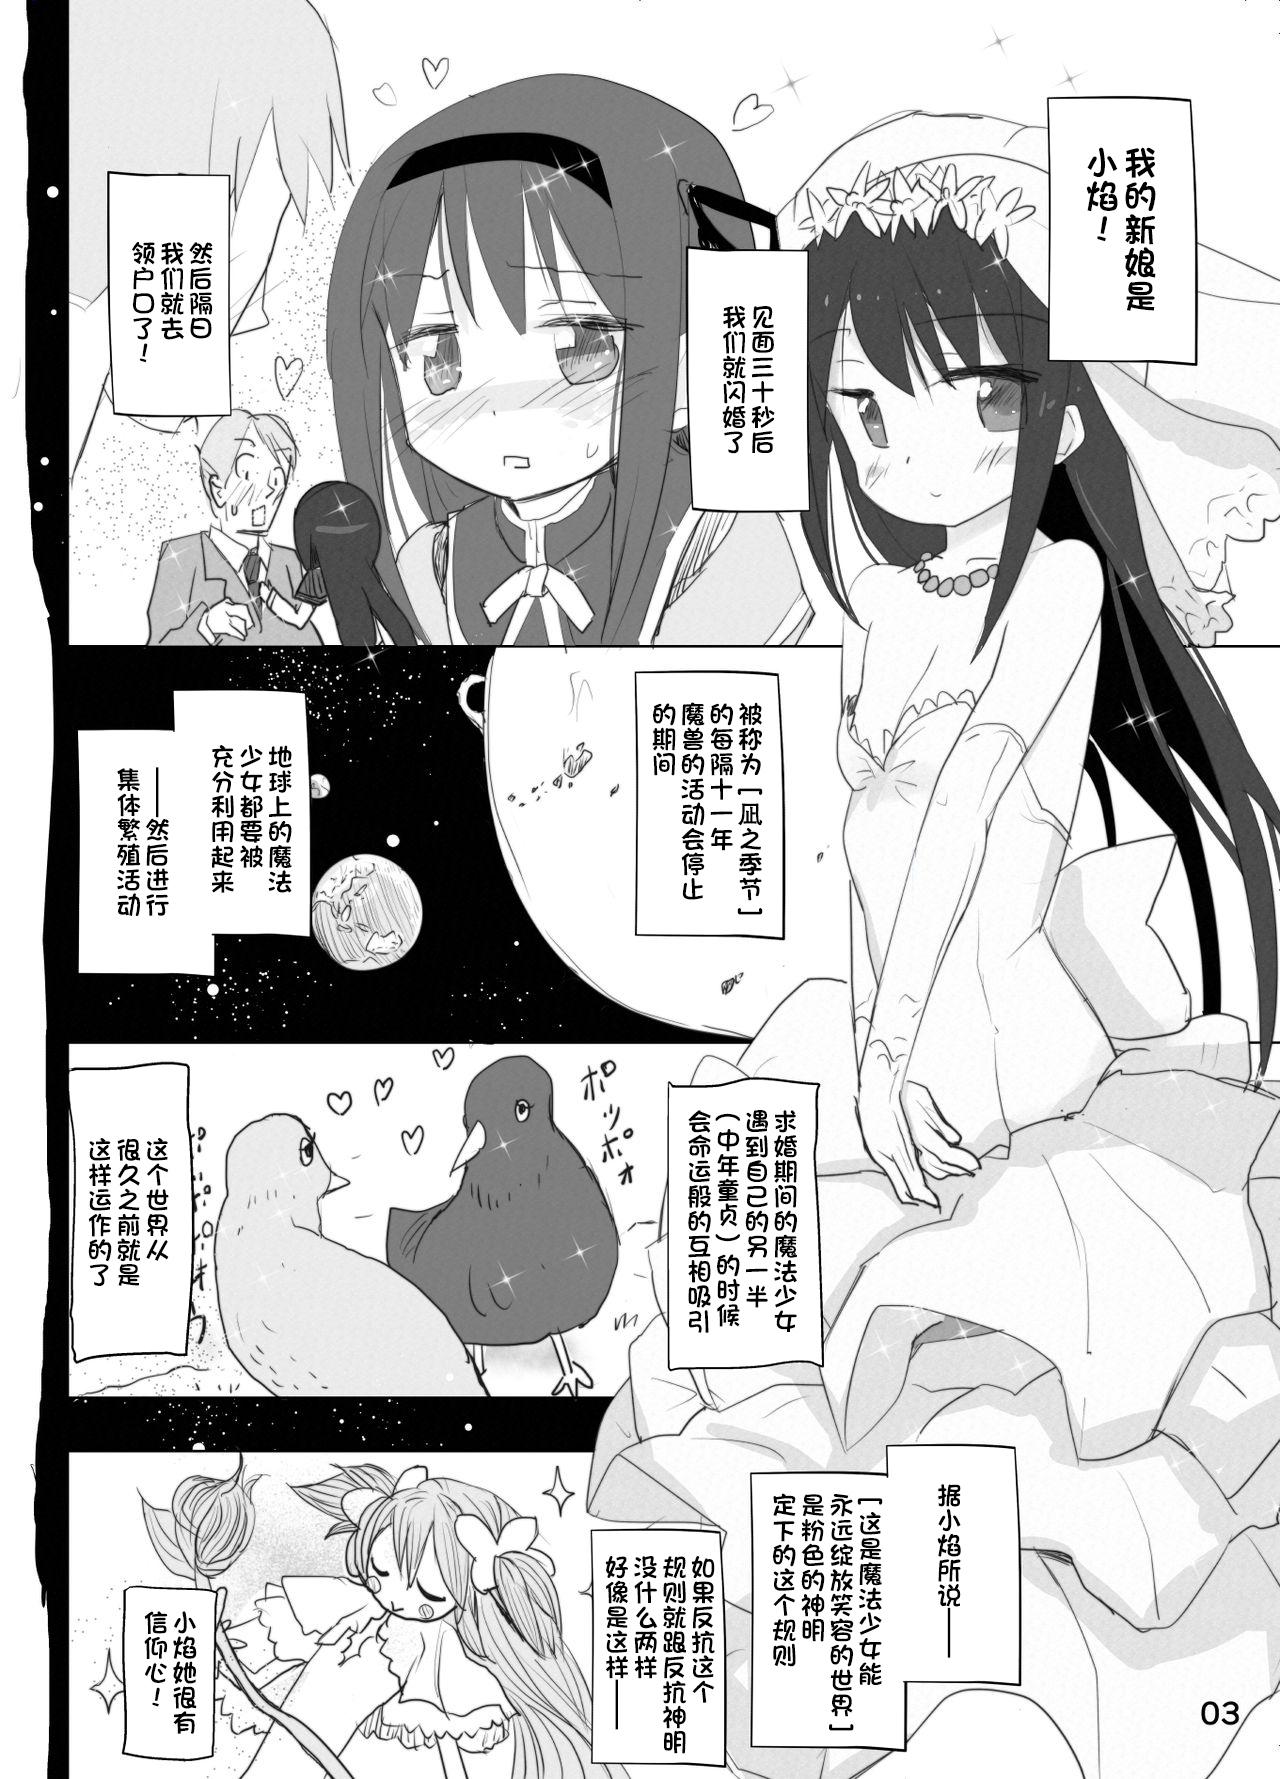 Pussyfucking Anata no Koto ga Daisuki na Homura-chan to Iku Shuudan Roshutsu Shinkon Ryokou Hawaii!! - Puella magi madoka magica Negra - Page 3